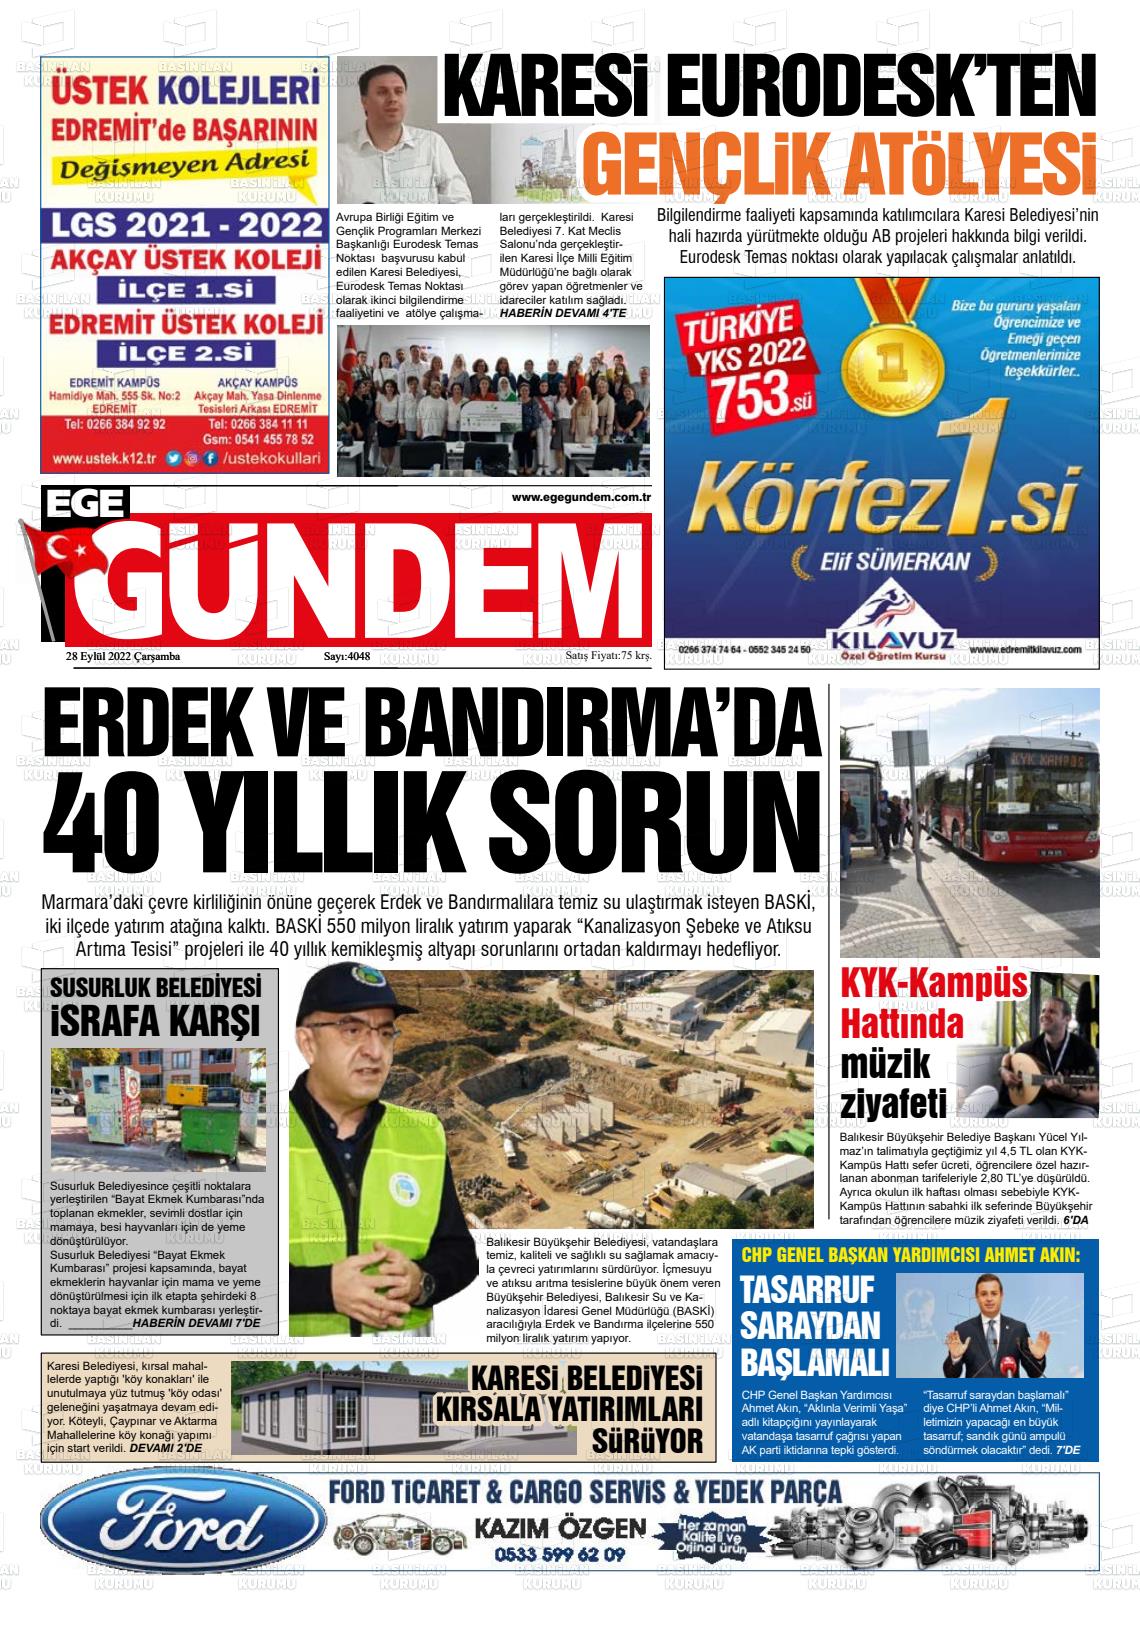 28 Eylül 2022 Ege Gündem Gazete Manşeti